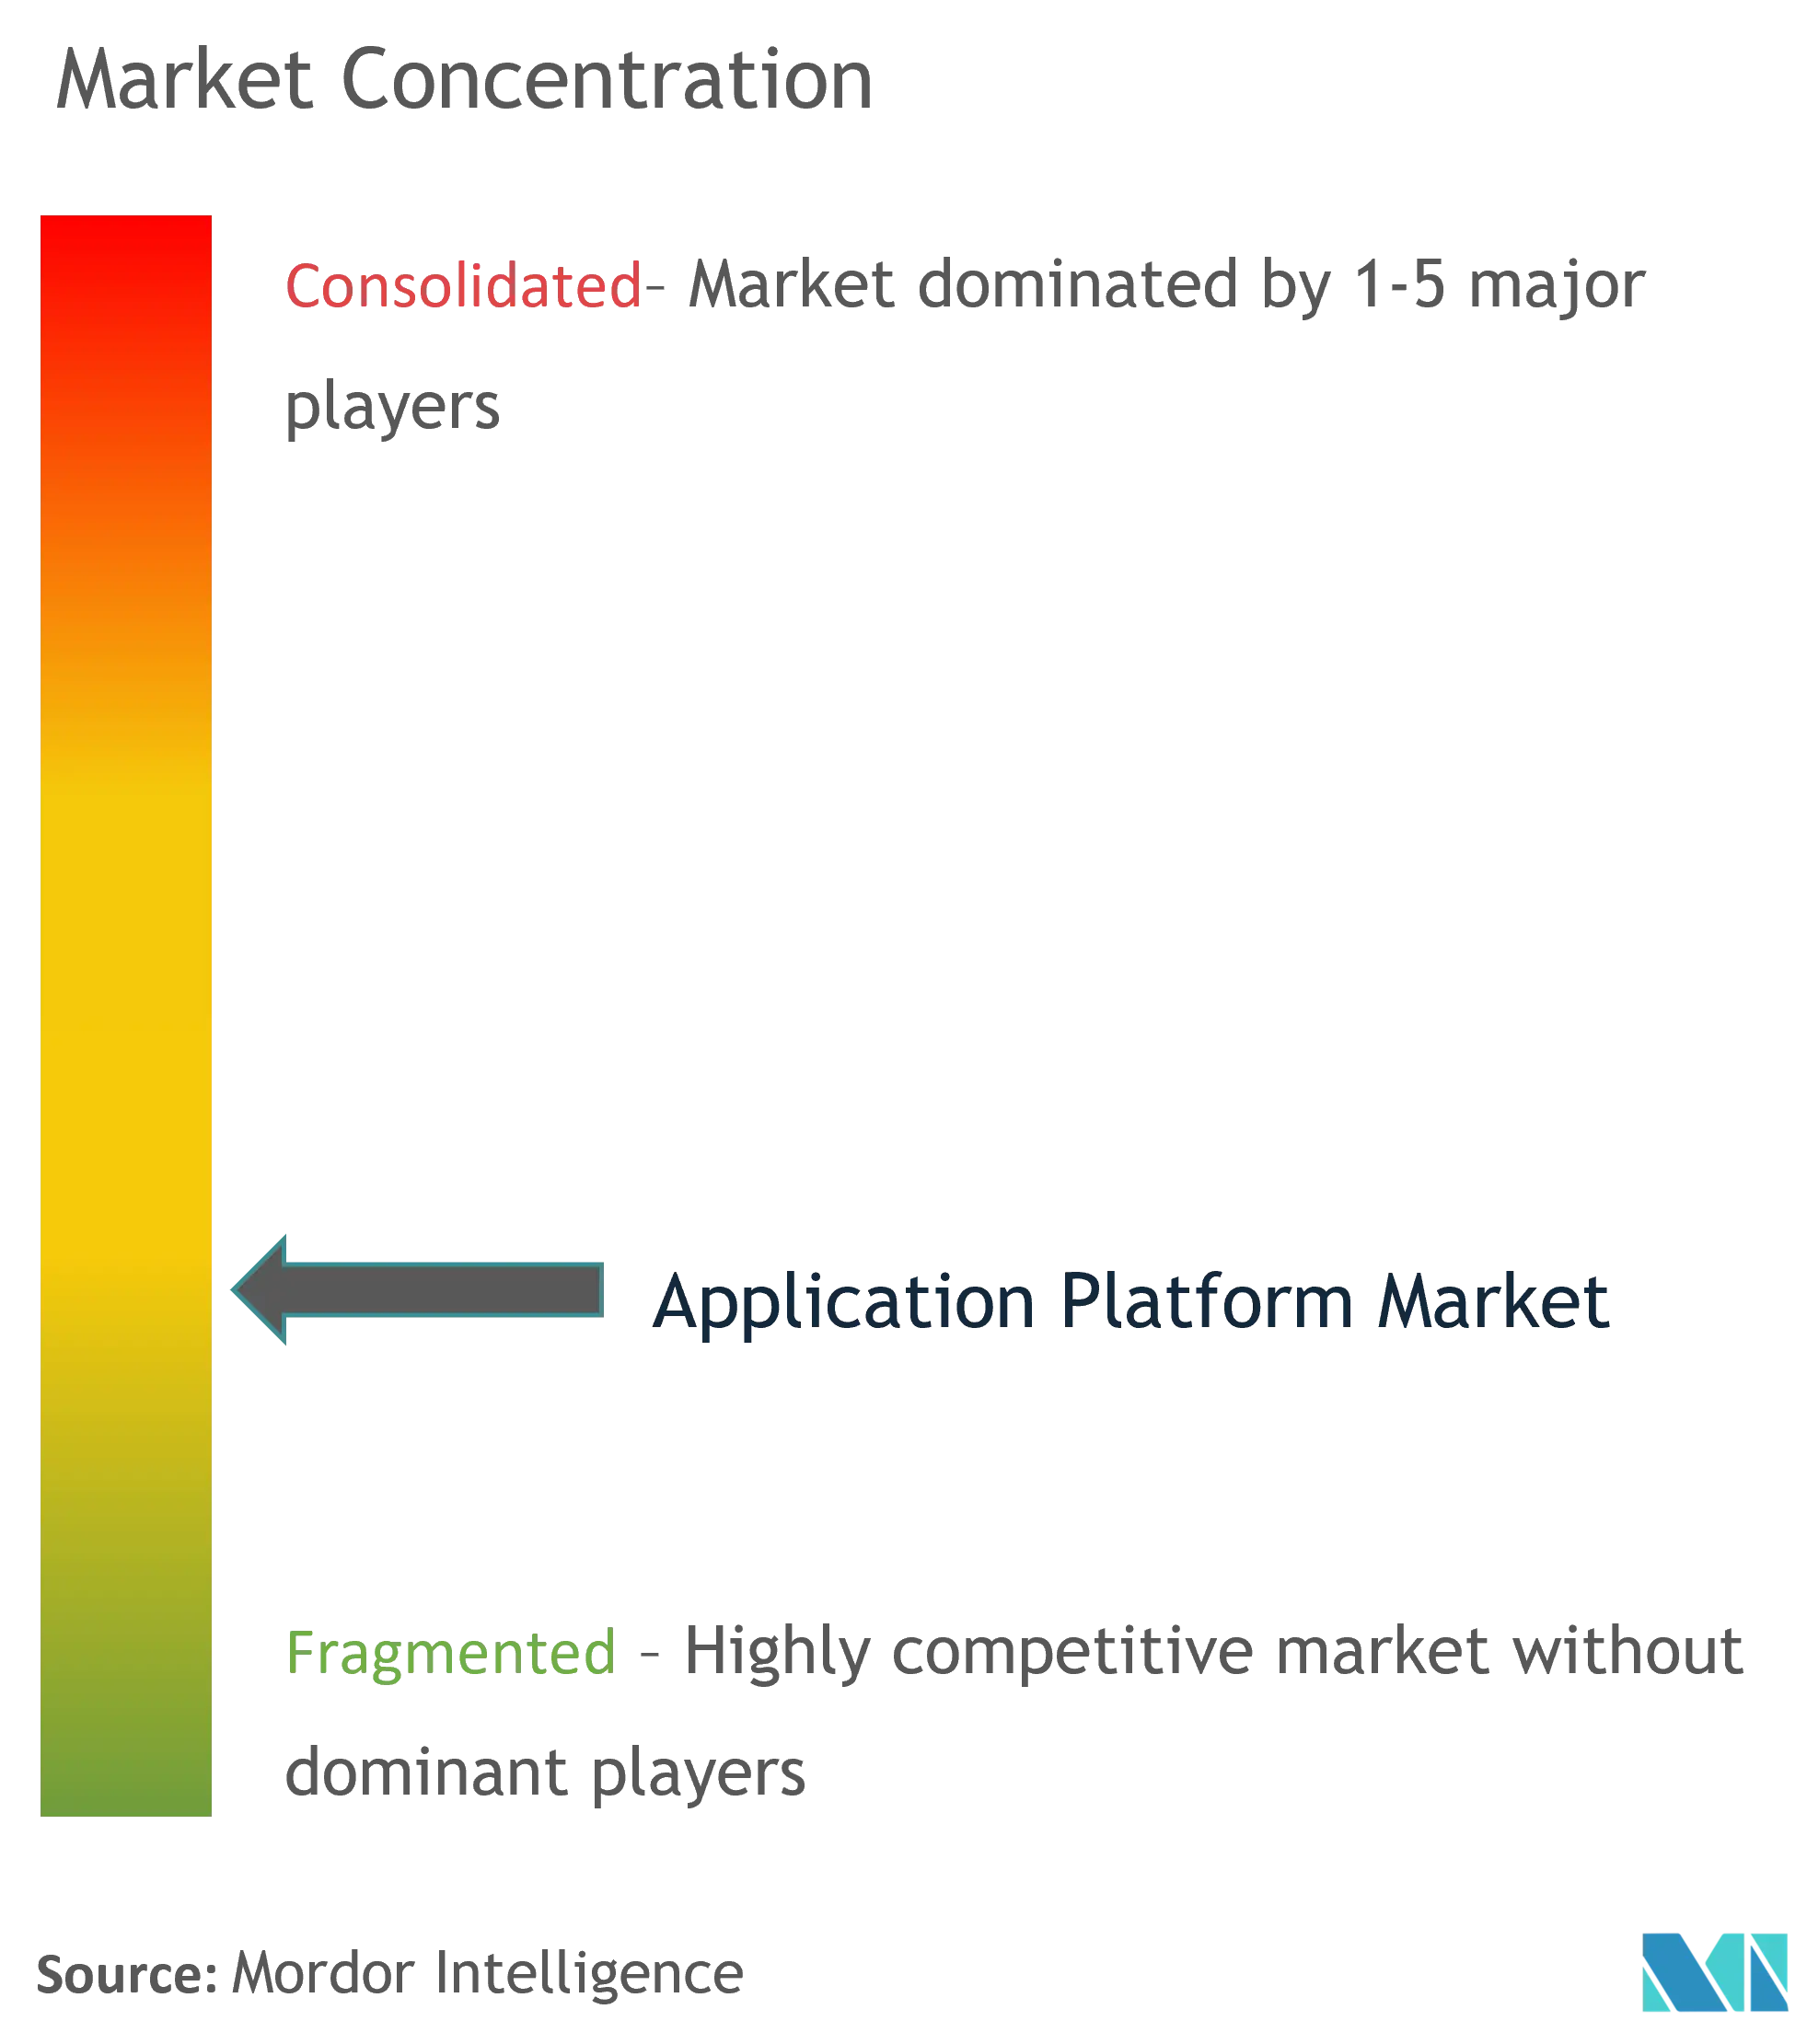 Application Platform Market - Market Concentration.png